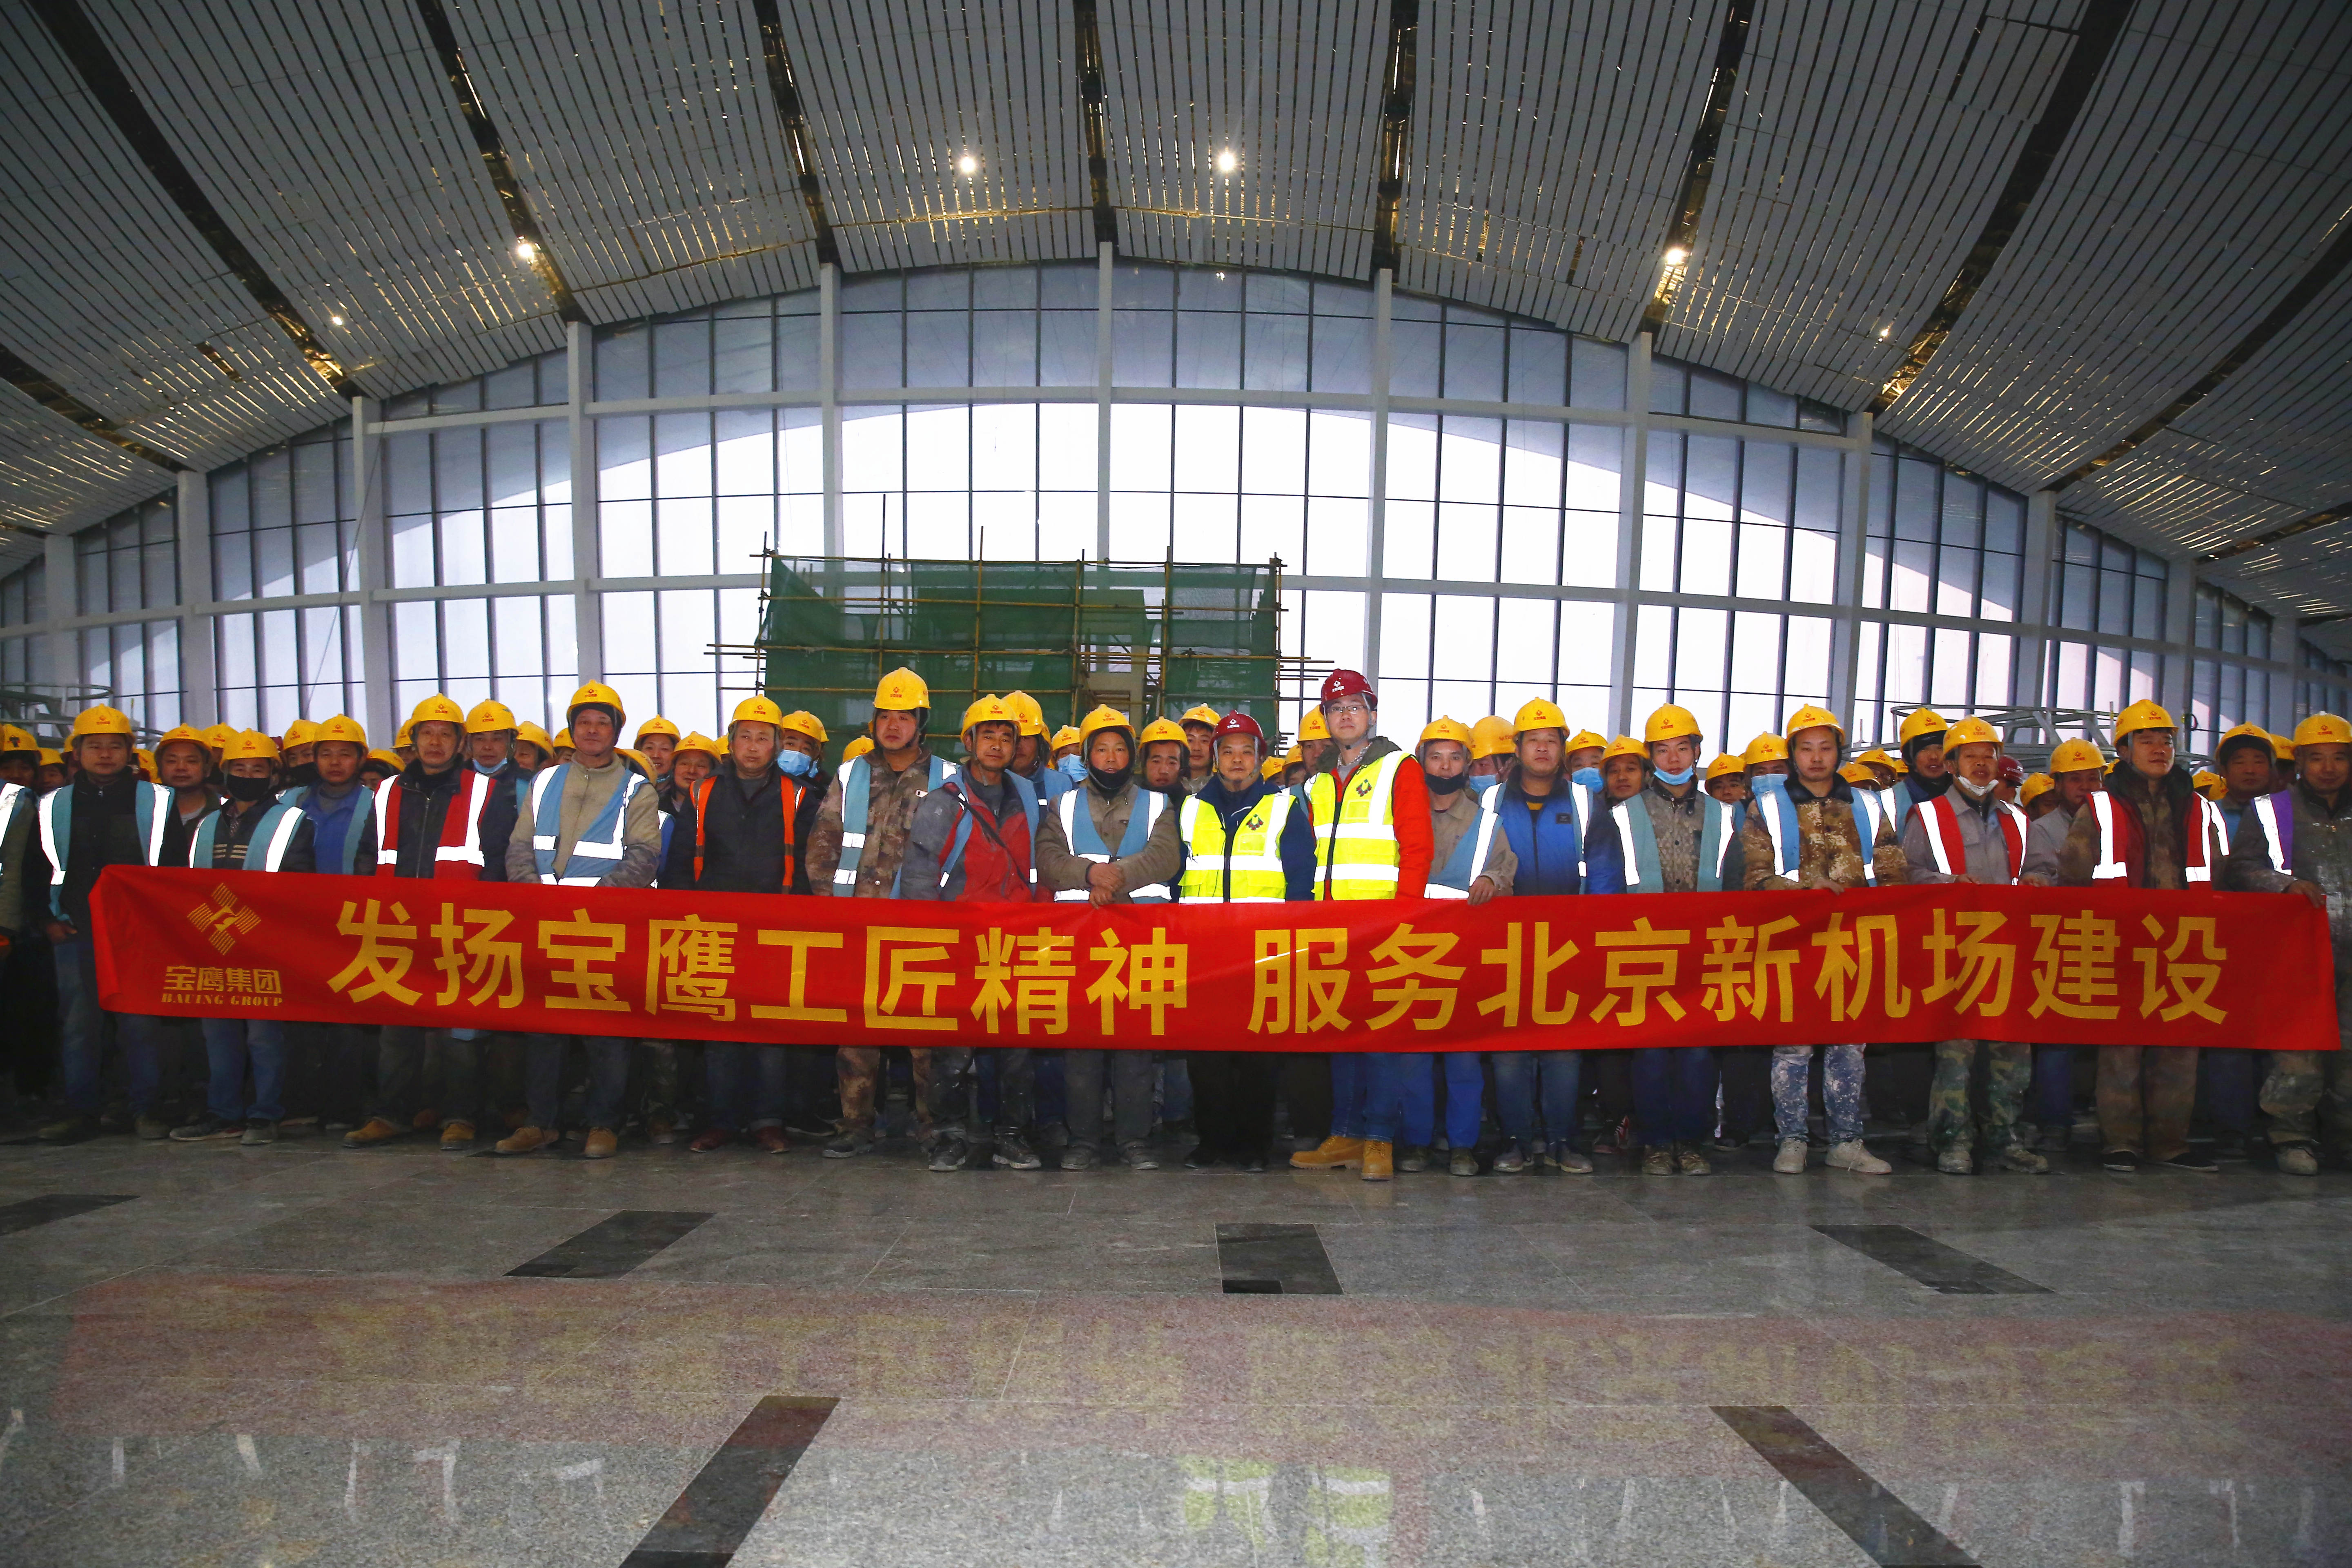 “鳳凰展翅”耀眼呈現 寶鷹集團全力服務北京大興國際機場建設